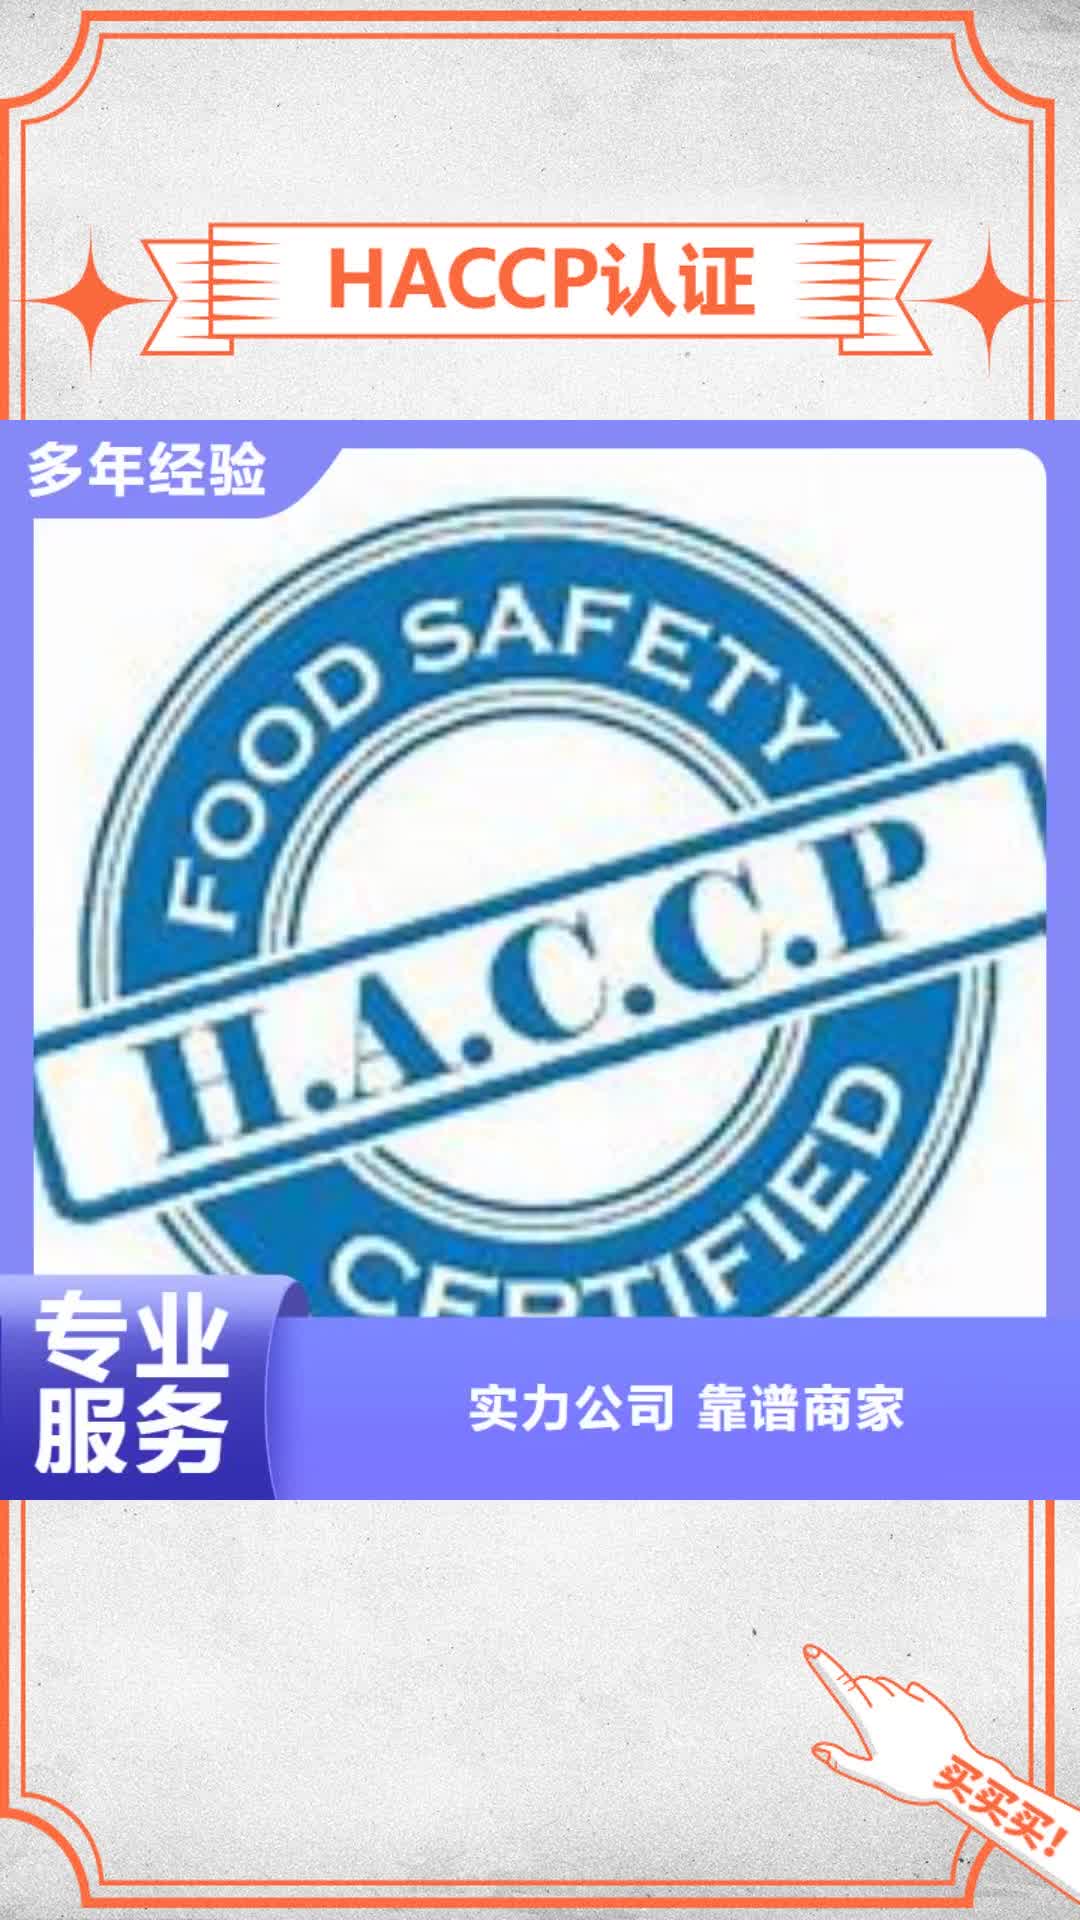 乐山 HACCP认证-【ISO13485认证】正规公司